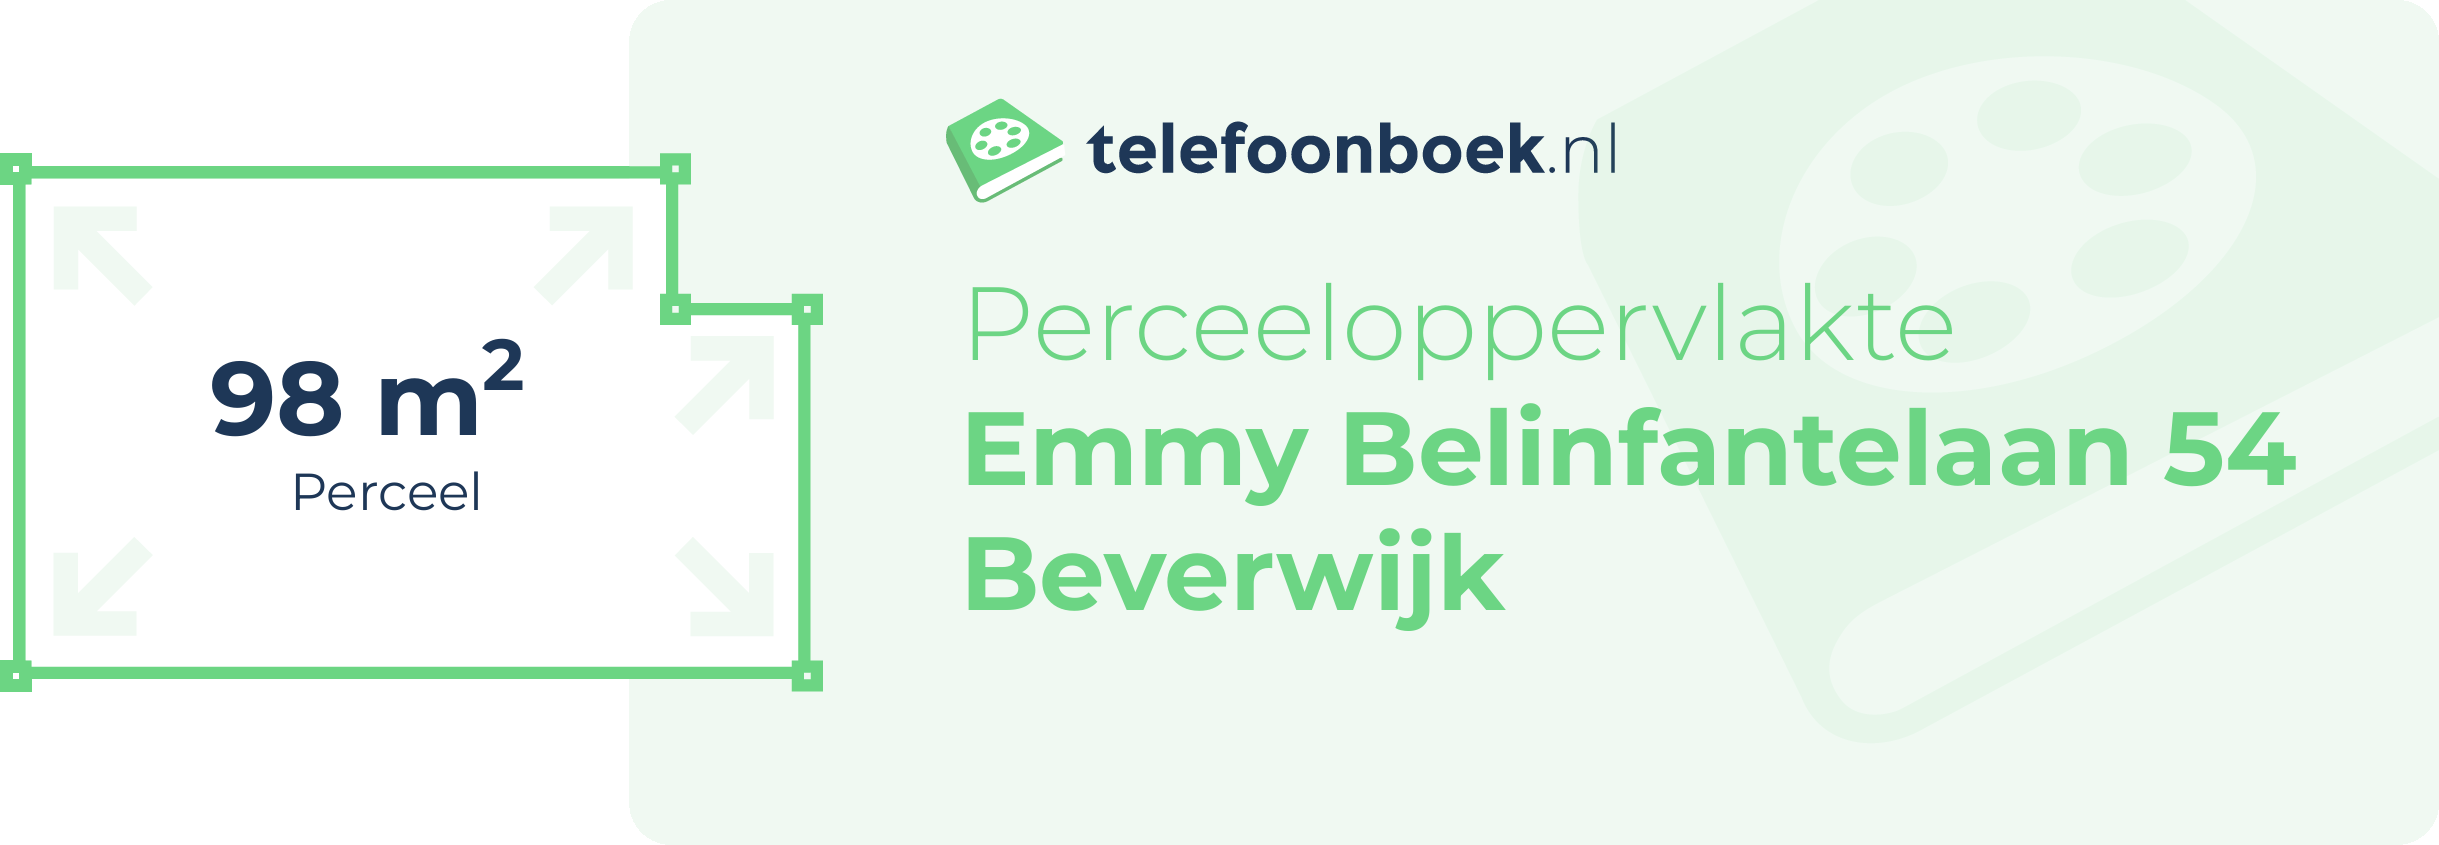 Perceeloppervlakte Emmy Belinfantelaan 54 Beverwijk